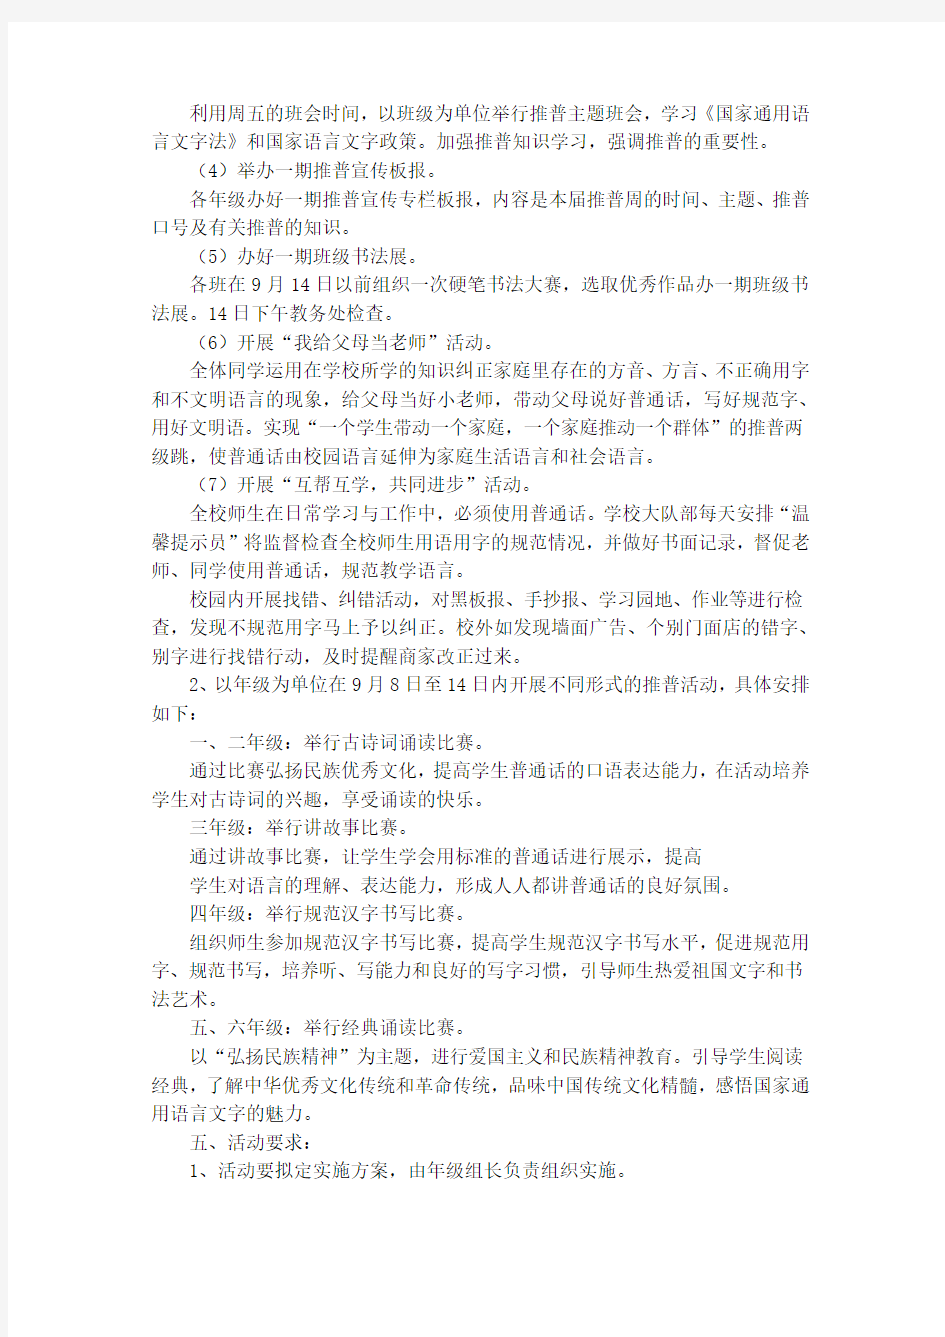 2016年推广普通话宣传周实施方案